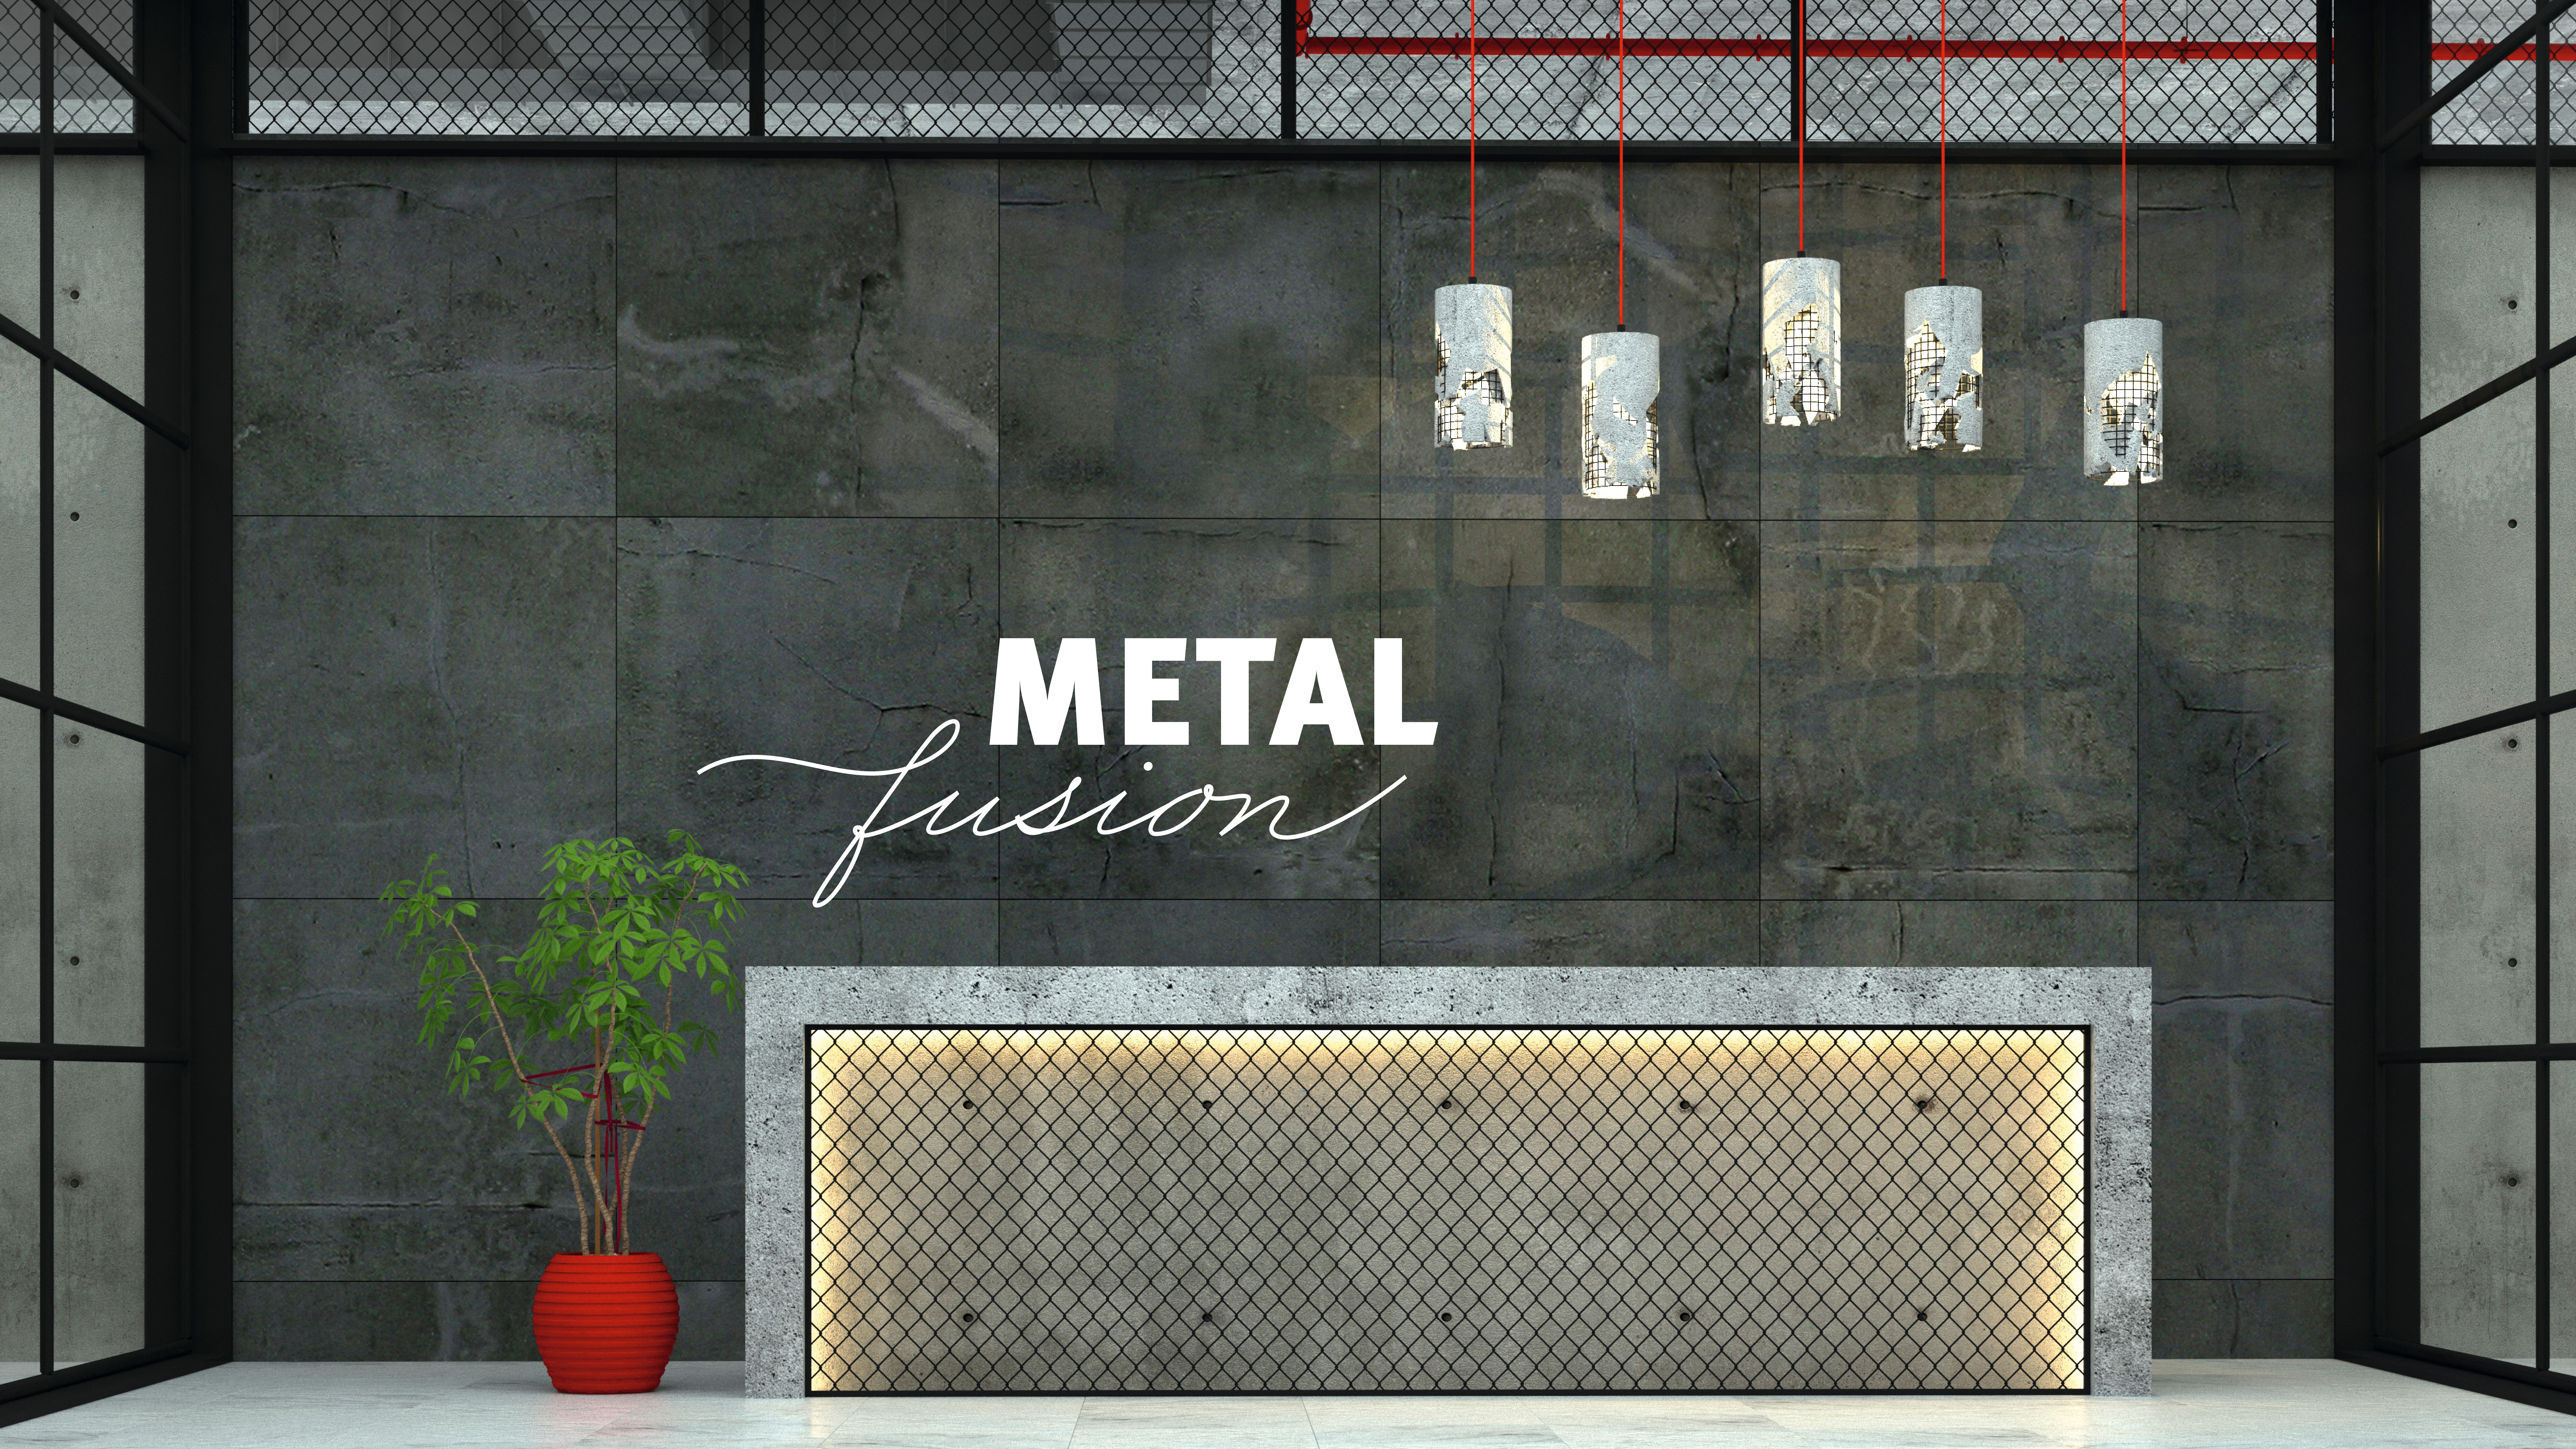 Світ тенденцій MetalFusion — технологічний дизайн